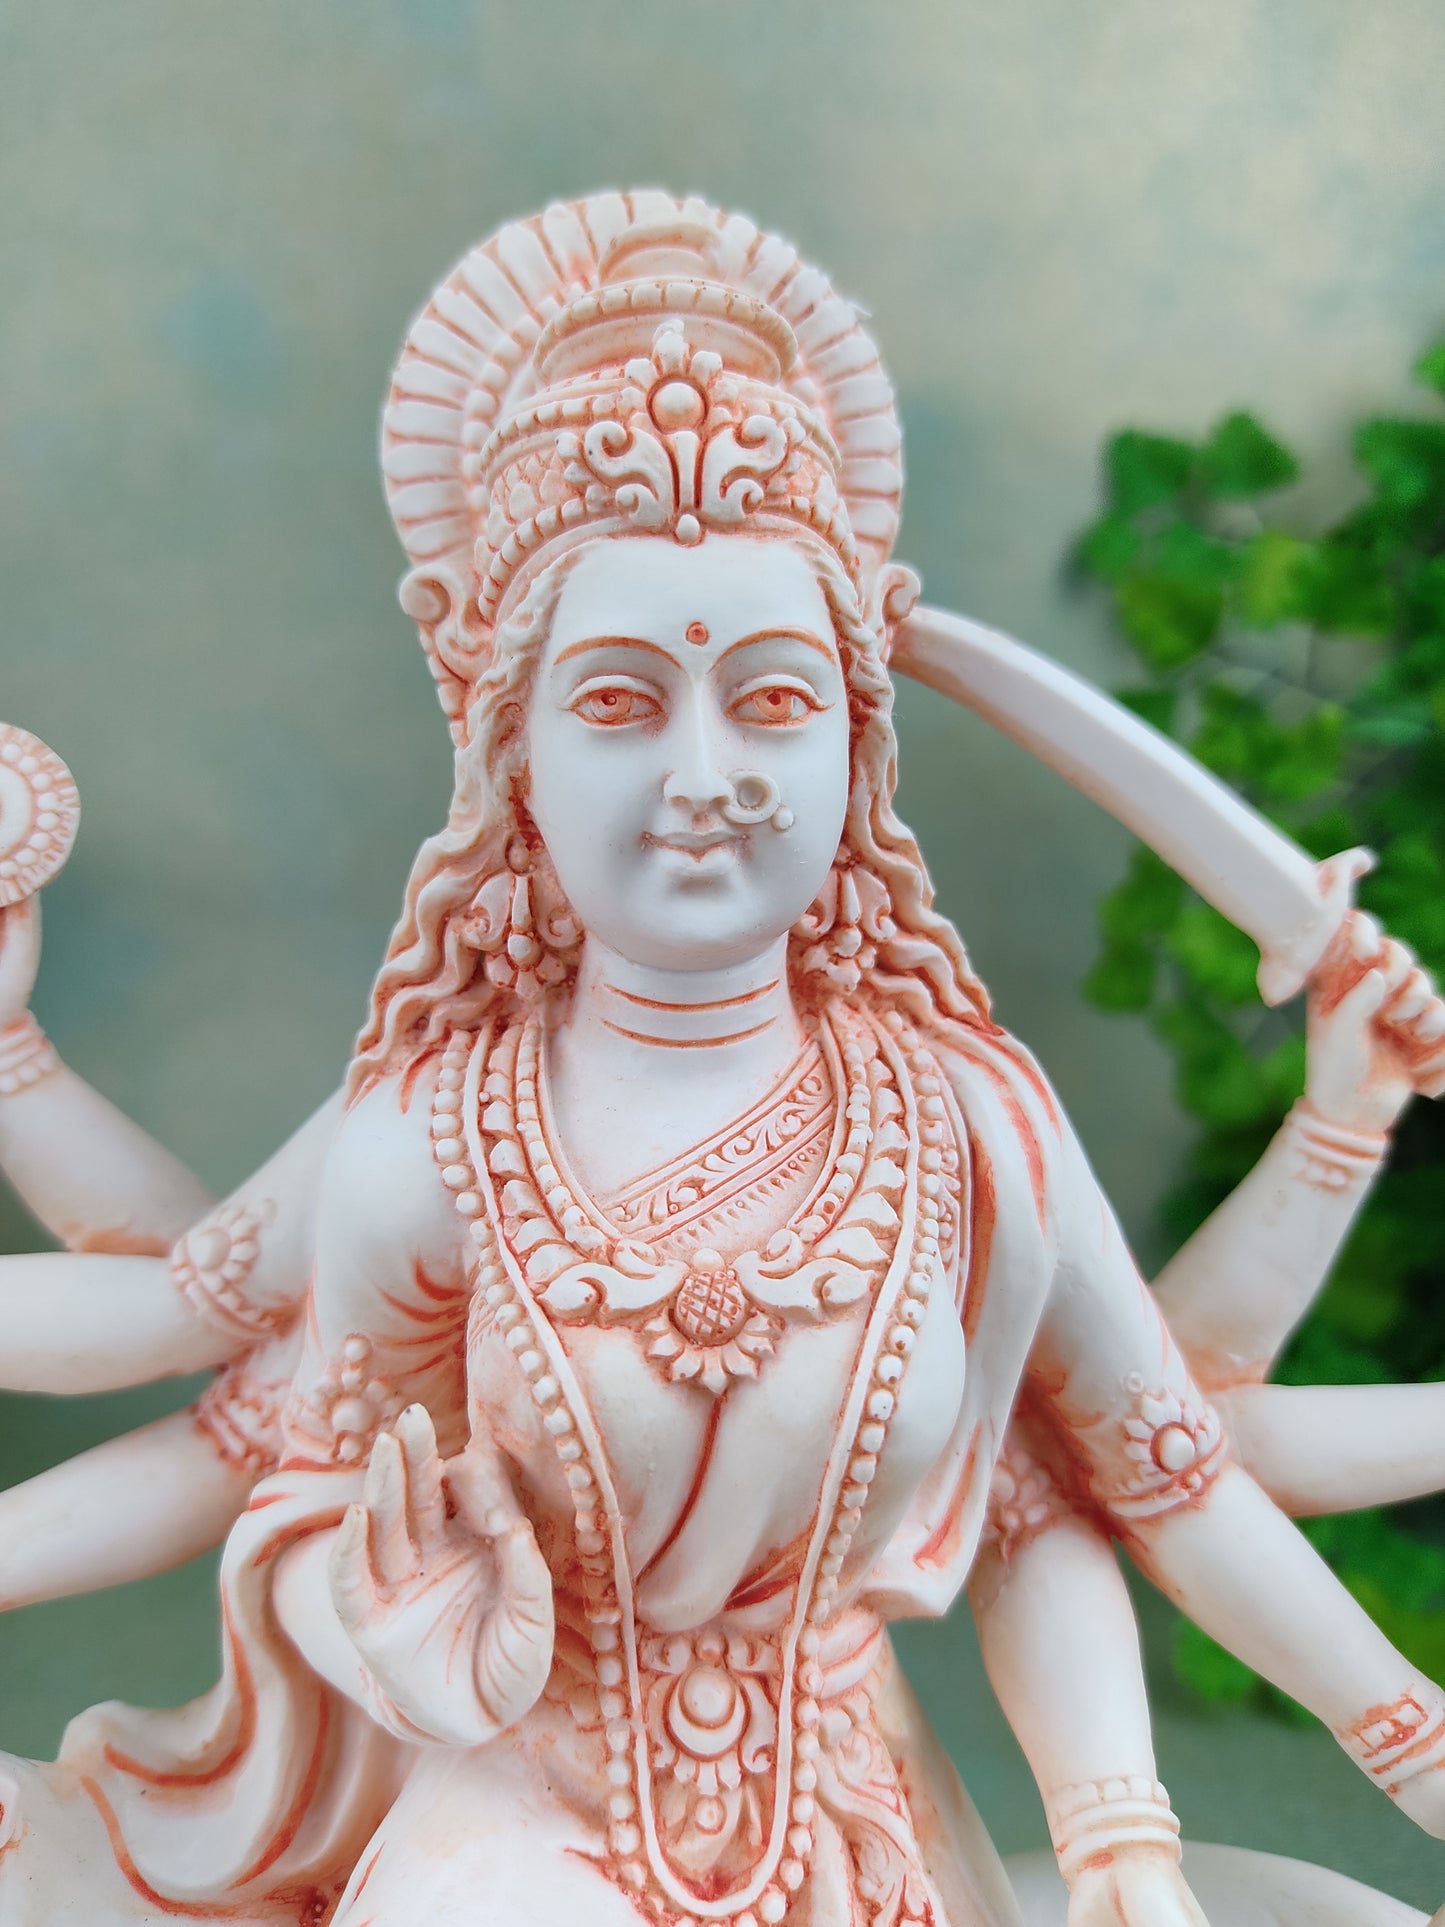 9" Durga Statue Hindu Goddess on Bengal Tiger Handmade Clay Durga Maa Idol